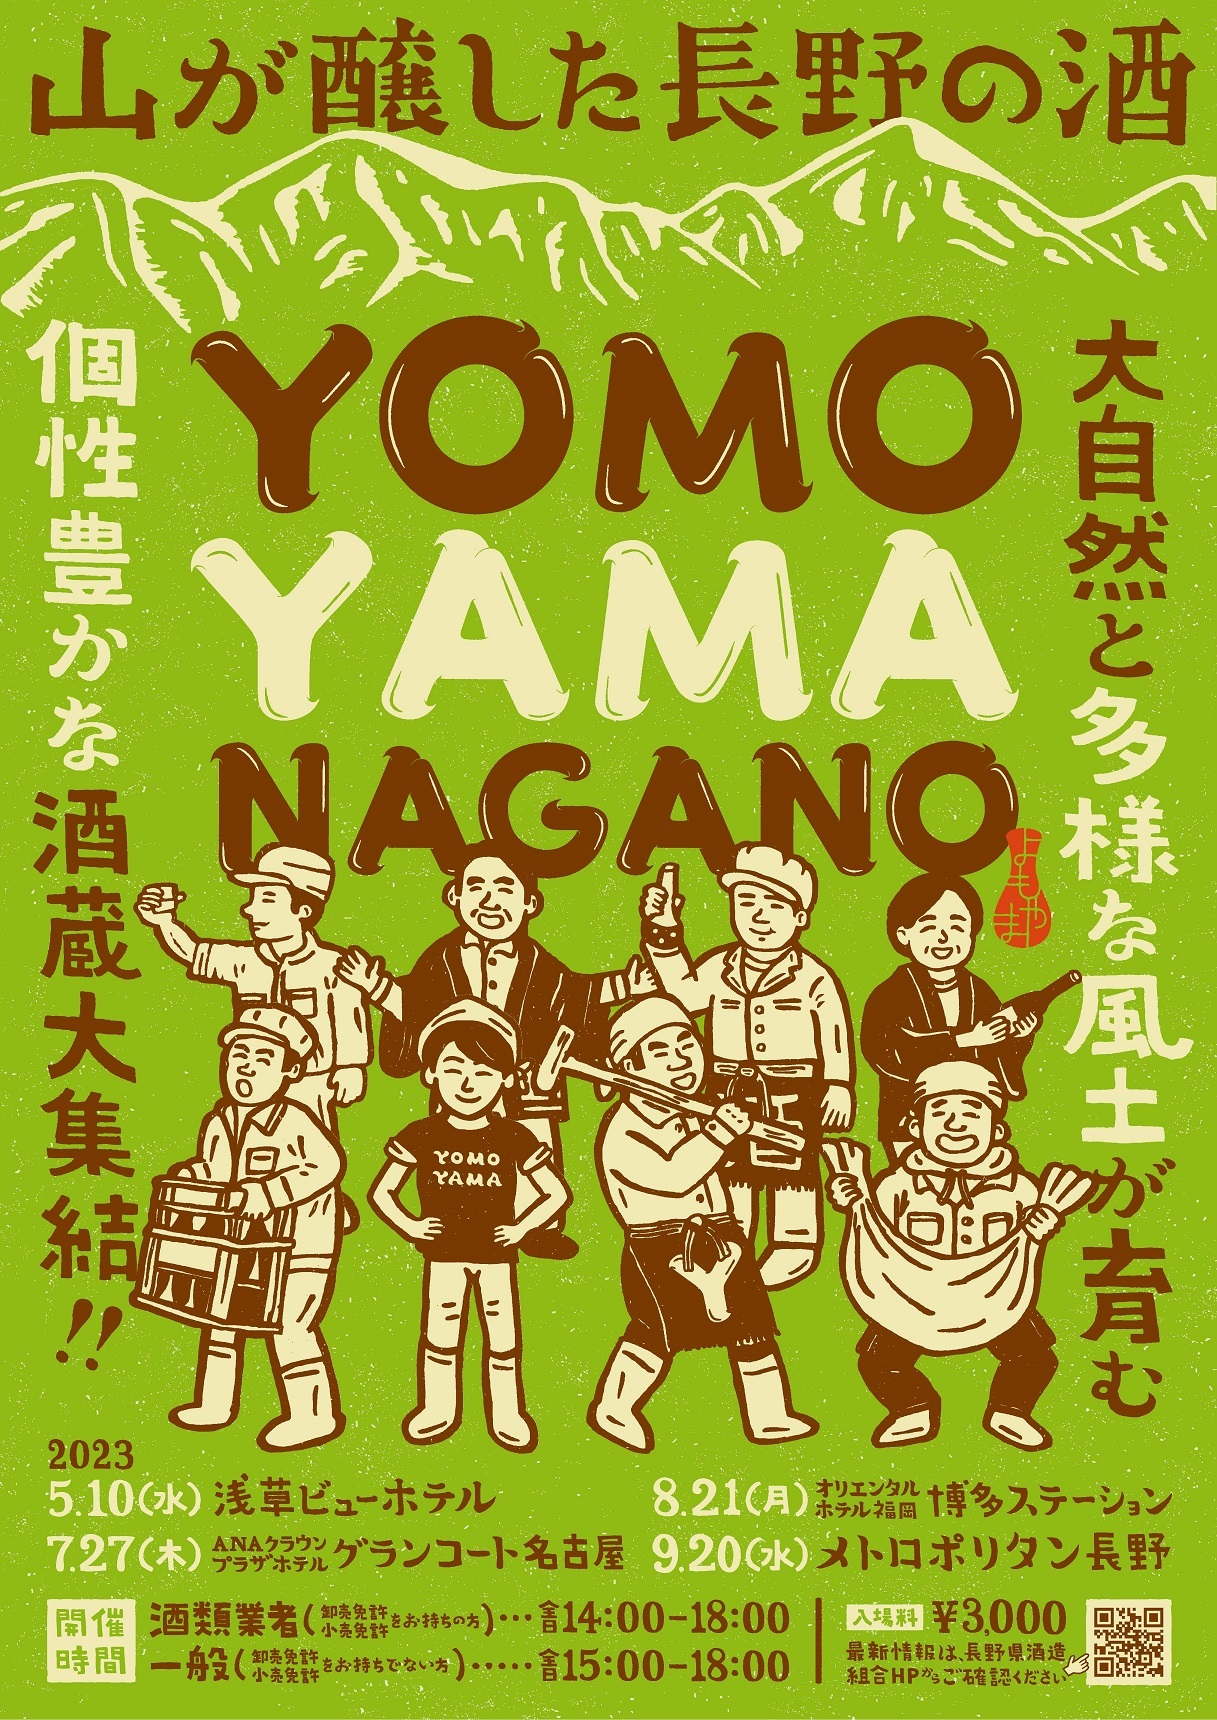 長野の銘酒を試飲しながら、蔵人の話を聞こう！
「YOMOYAMA NAGANO」全国4会場
(東京・名古屋・福岡・長野)で順次開催！